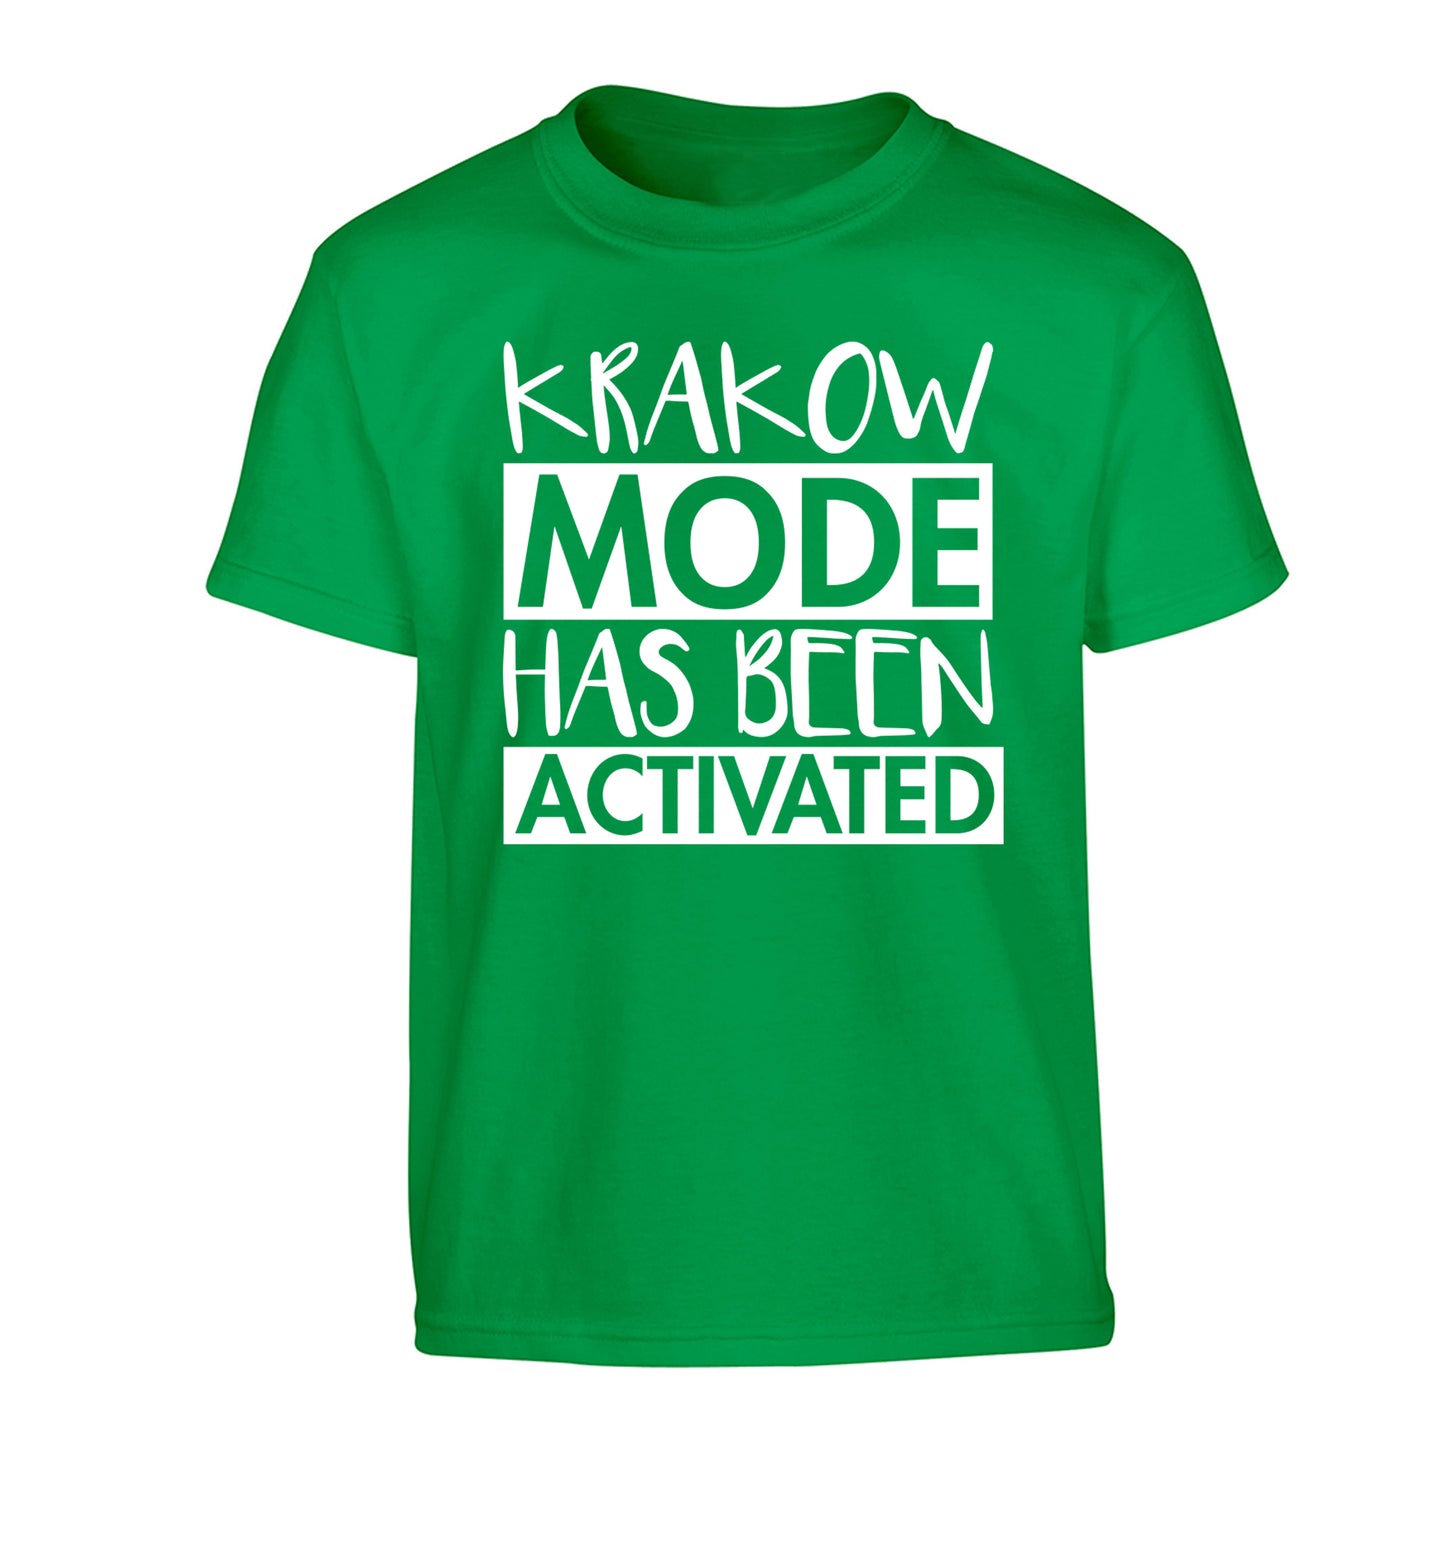 Krakow mode has been activated Children's green Tshirt 12-13 Years